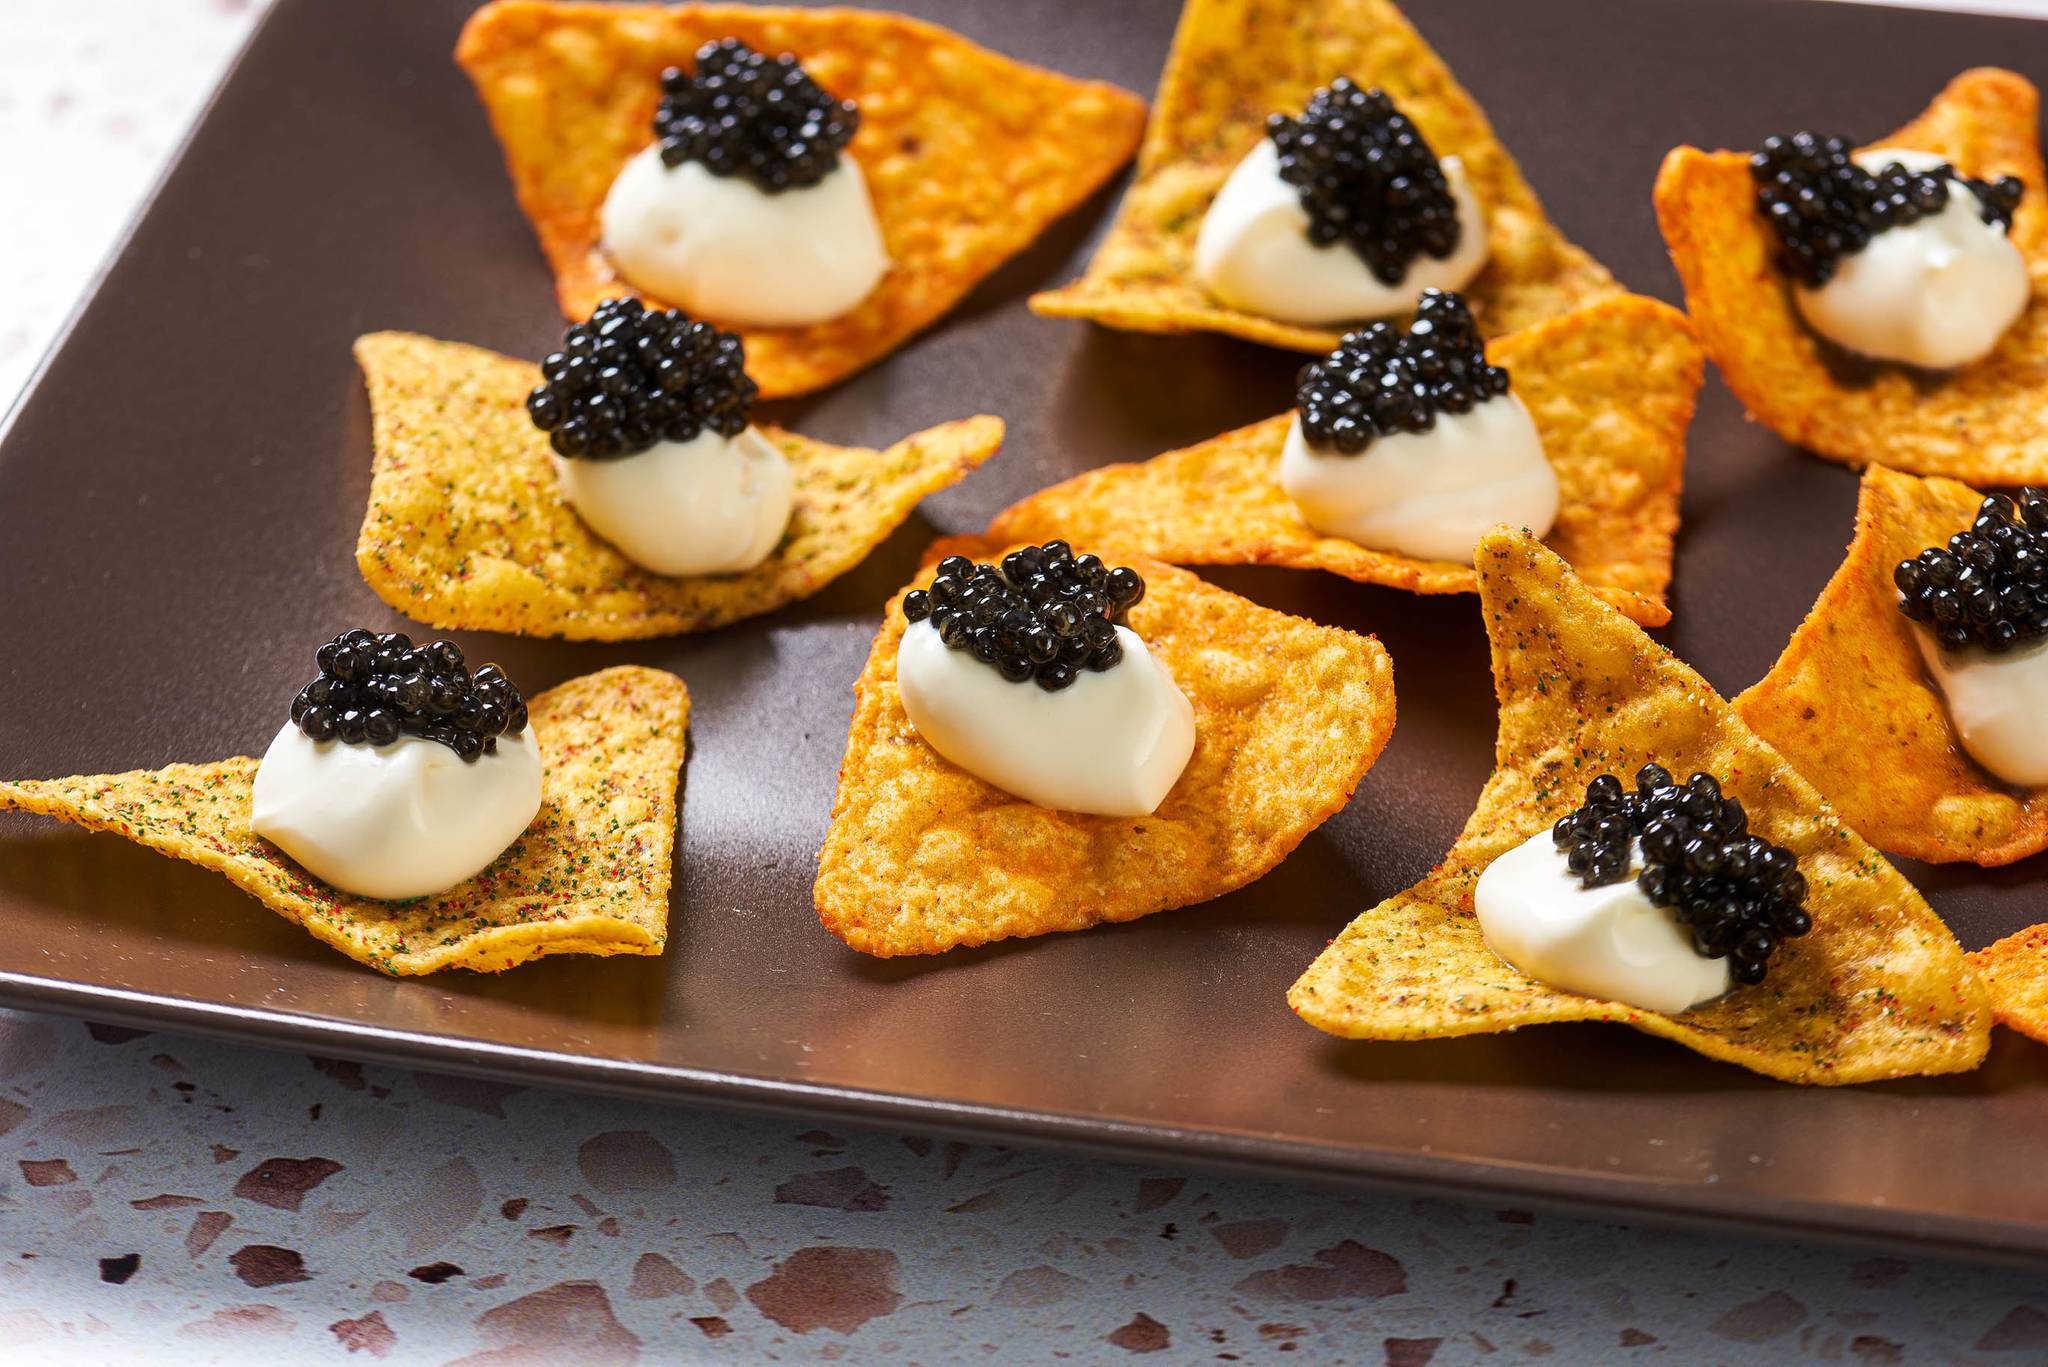 Caviar on Doritos offers a responsible indulgence